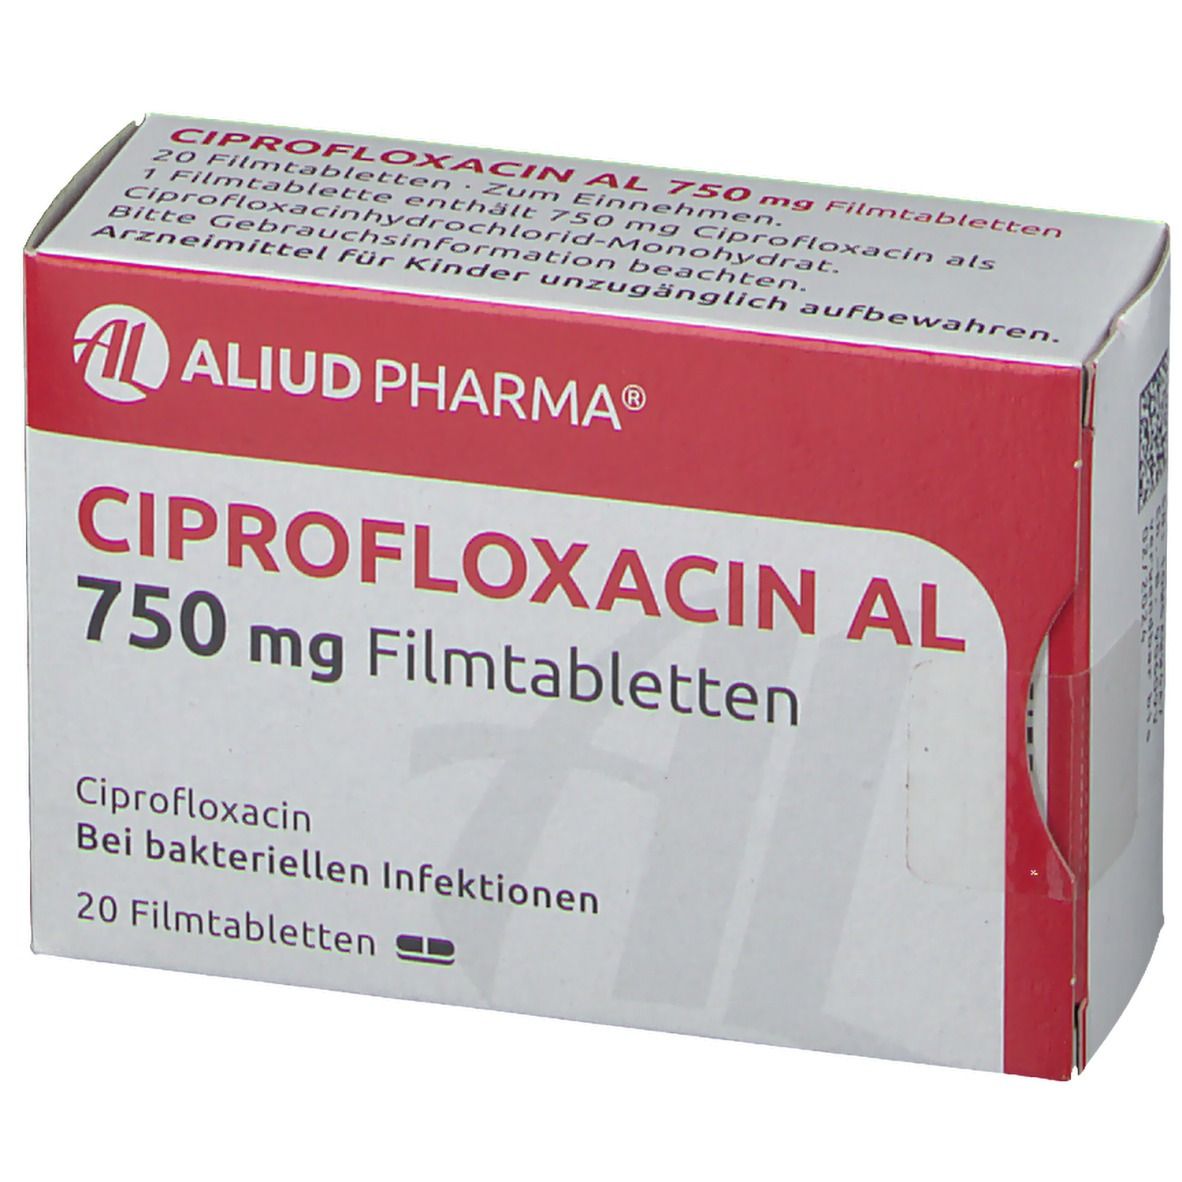 Ciprofloxacin AL 750 mg